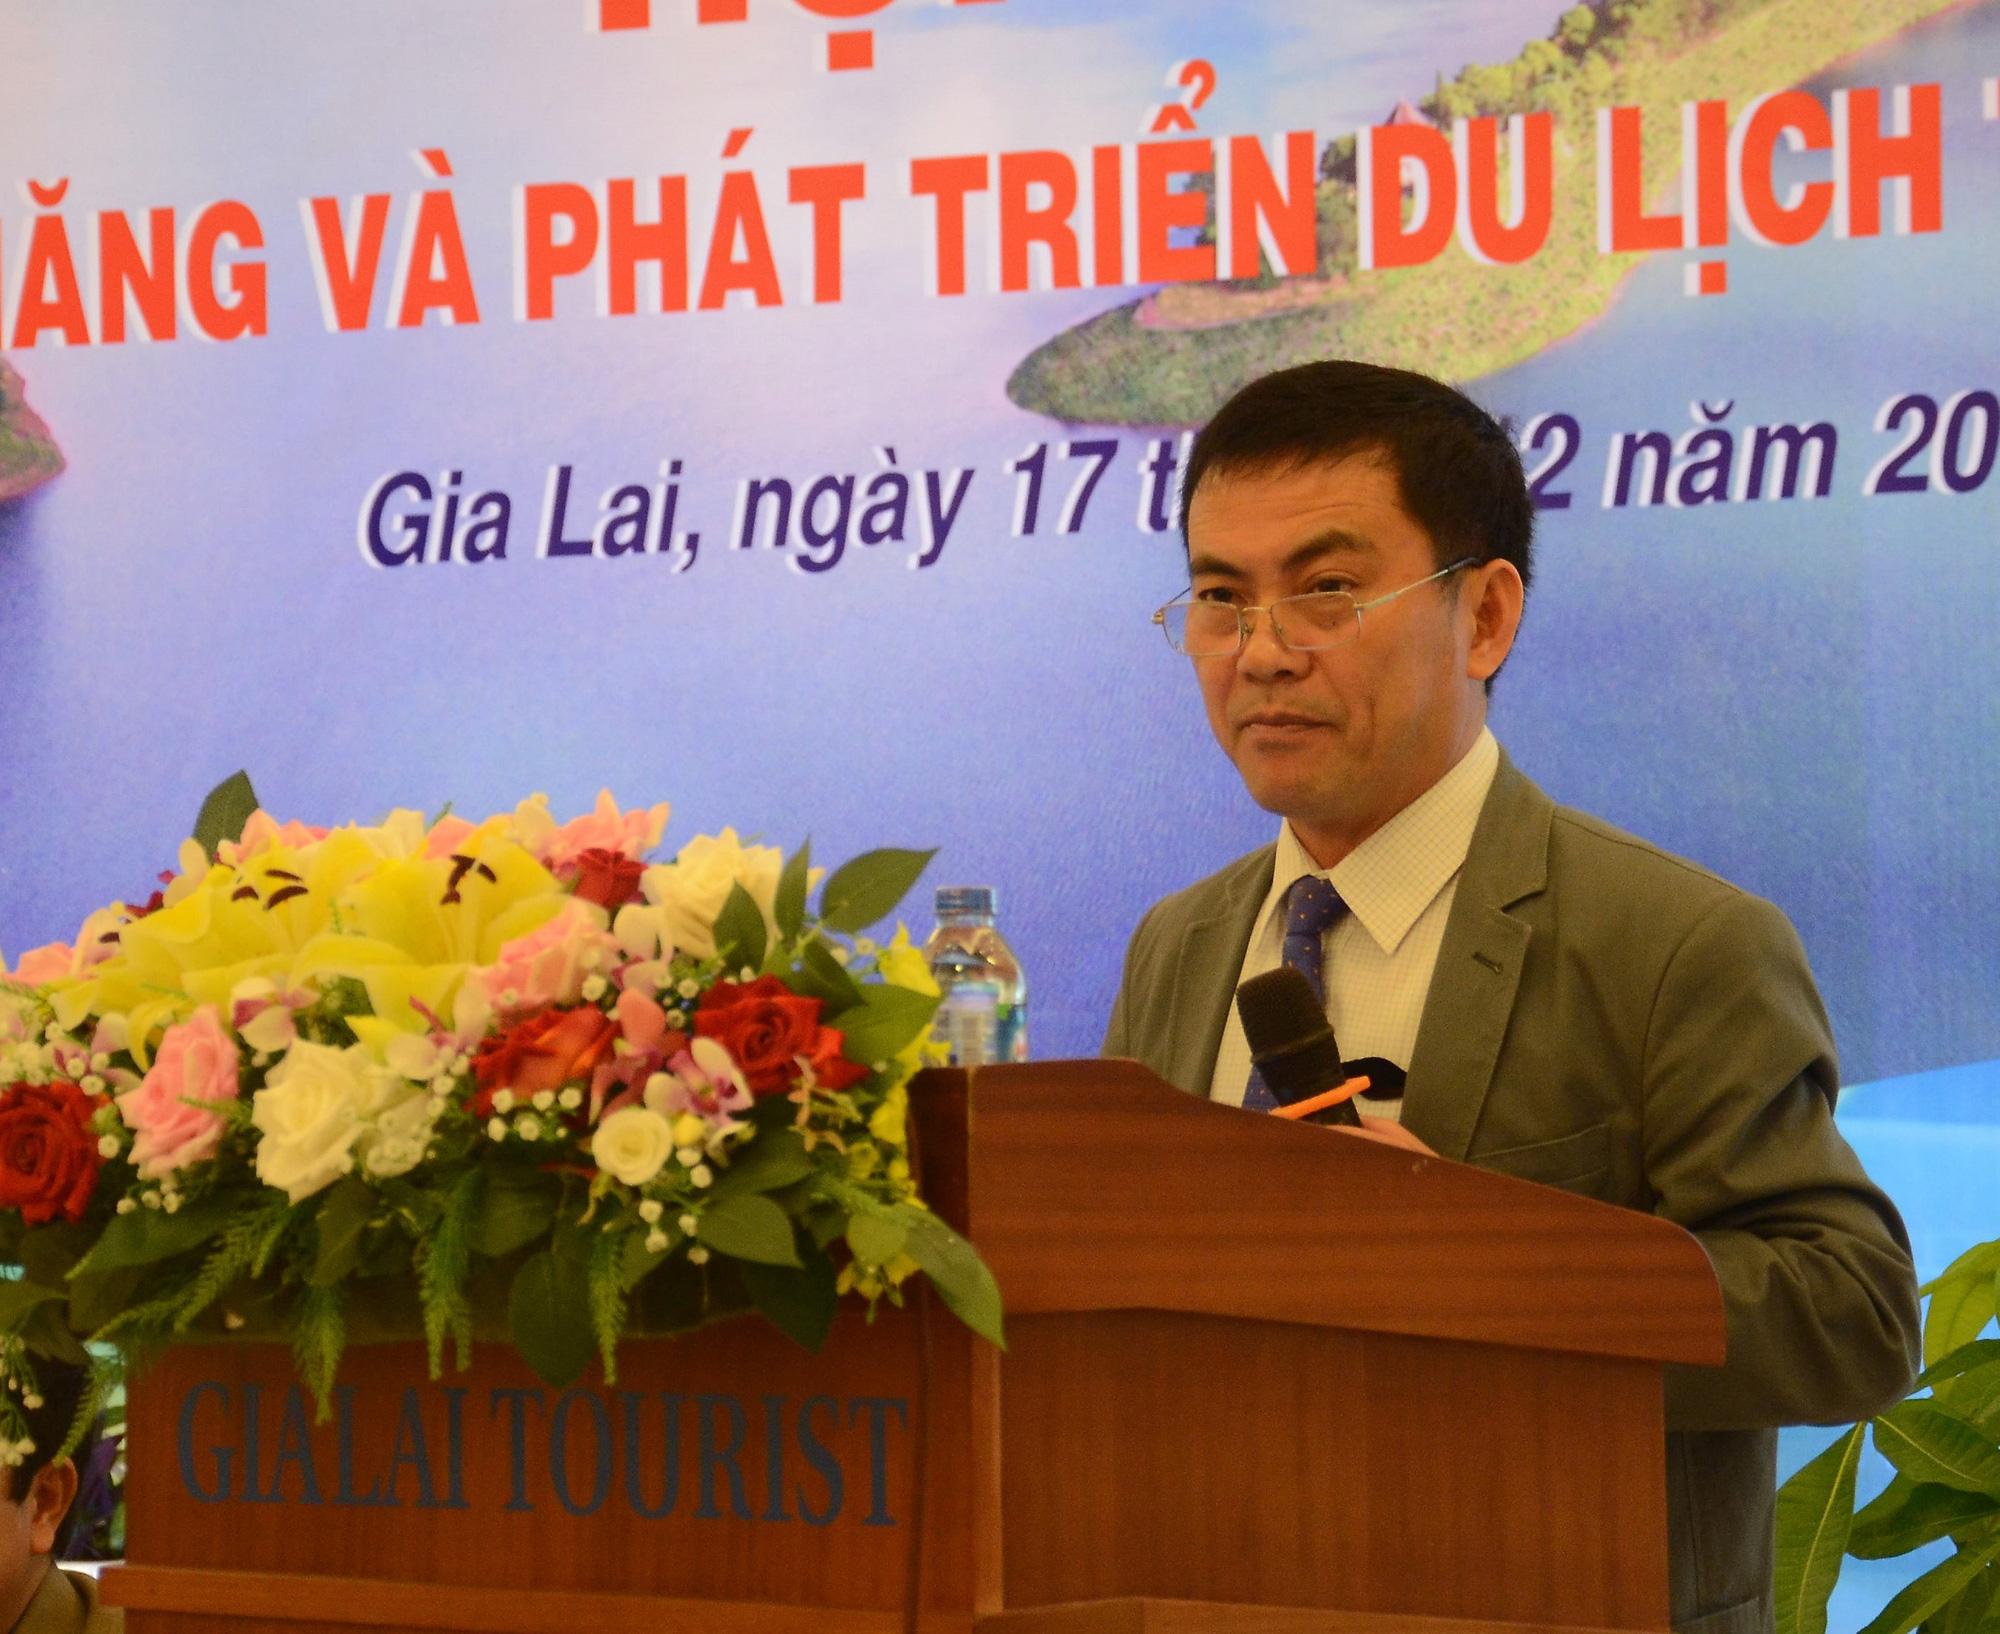 Ông Nguyễn Đức Hoàng xin thôi chức Phó Chủ tịch tỉnh Gia Lai - Ảnh 1.